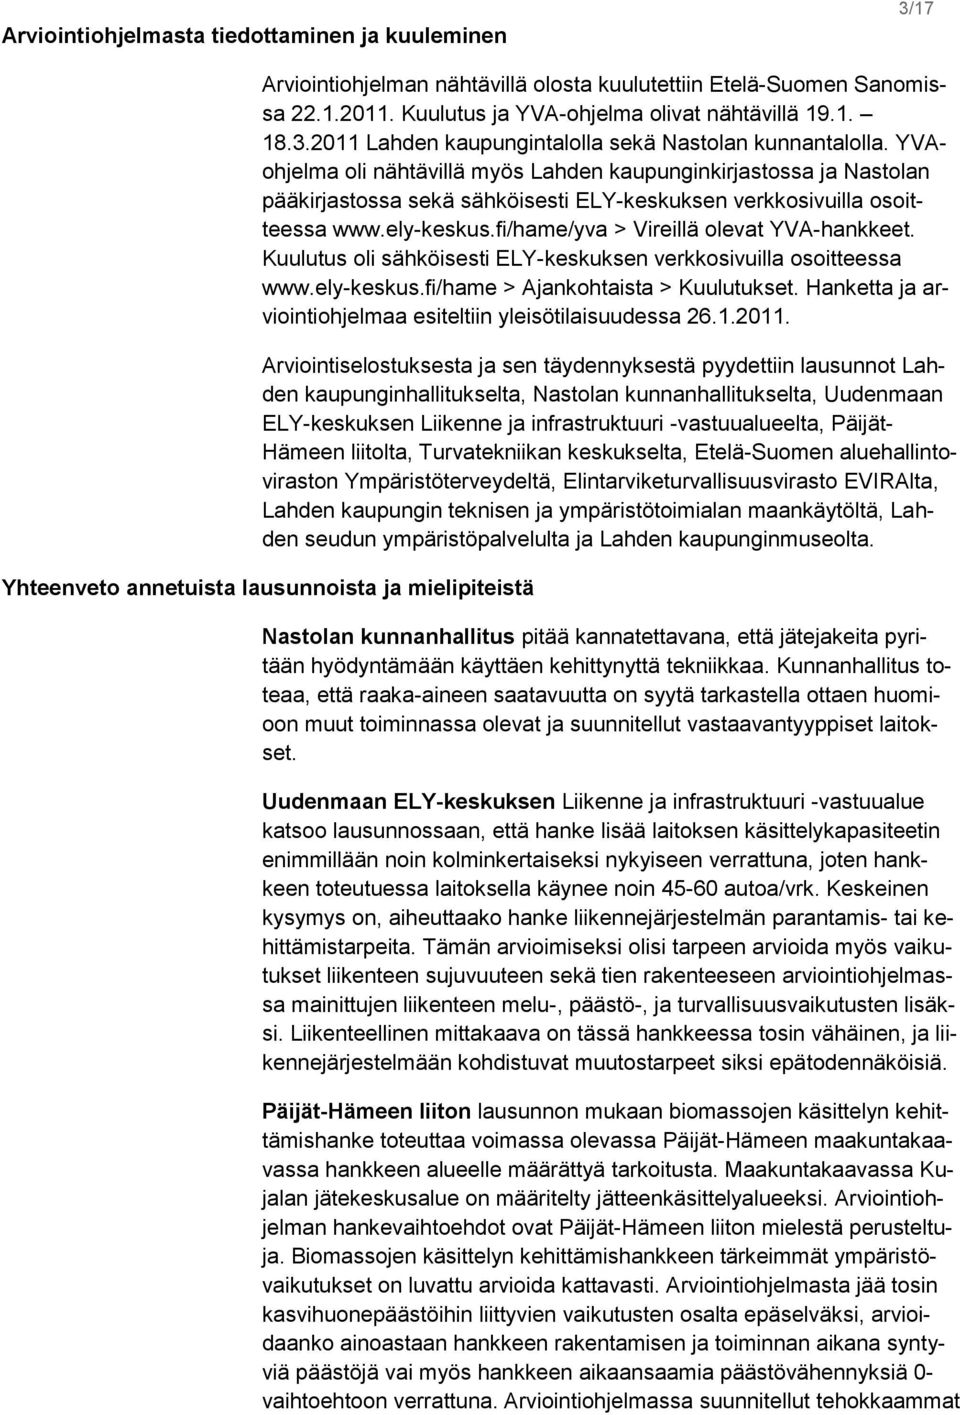 fi/hame/yva > Vireillä olevat YVA-hankkeet. Kuulutus oli sähköisesti ELY-keskuksen verkkosivuilla osoitteessa www.ely-keskus.fi/hame > Ajankohtaista > Kuulutukset.